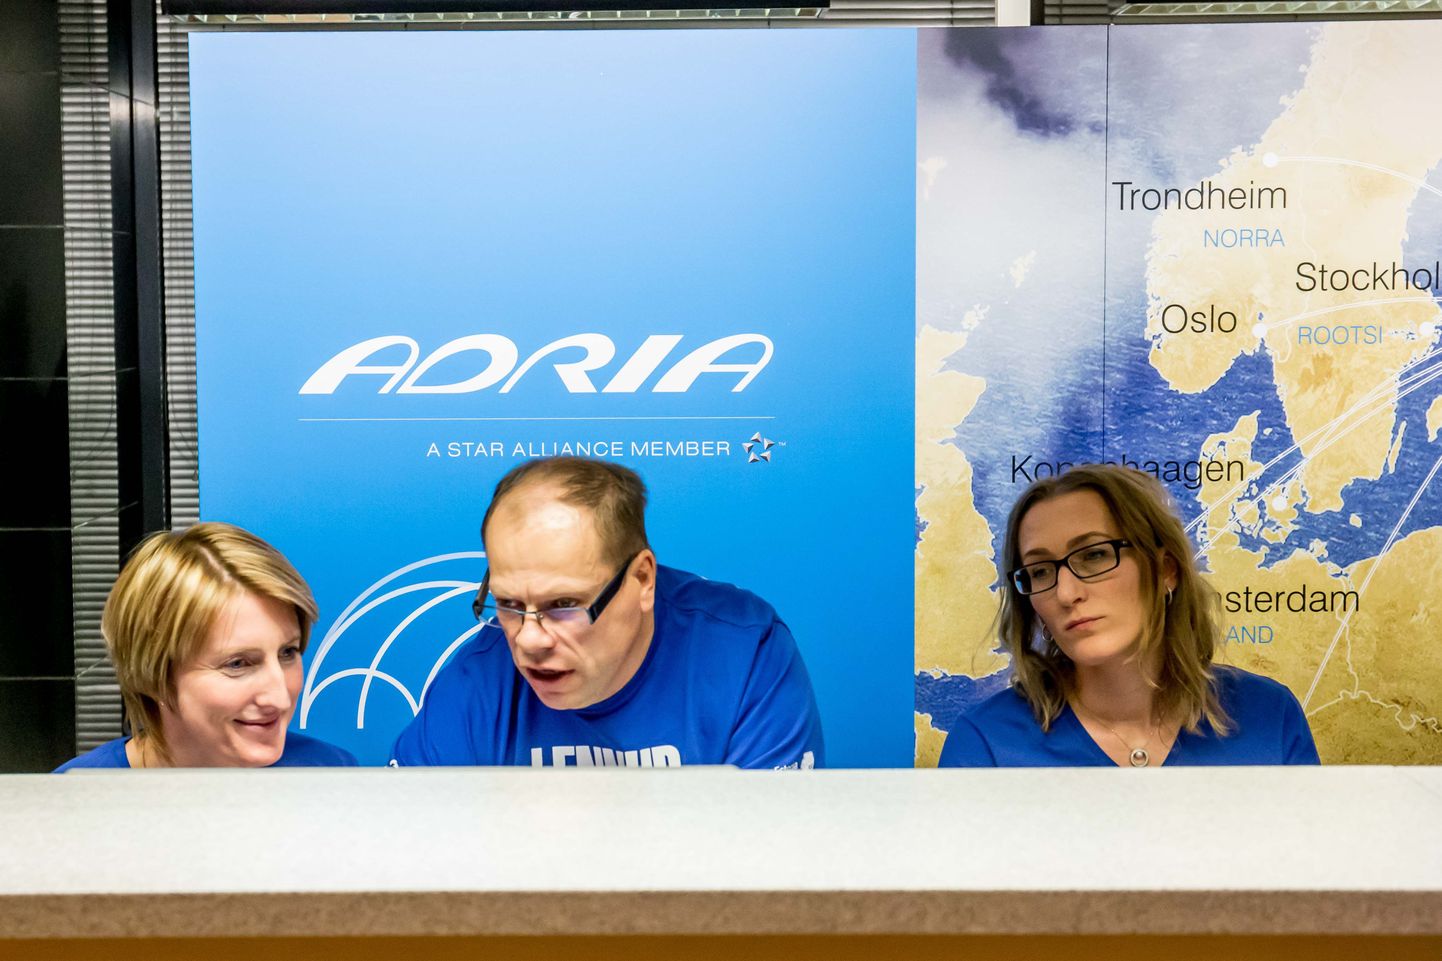 Иллюстративный снимок. Nordic Aviation обещает работникам Estonian Air такие же зарплаты.